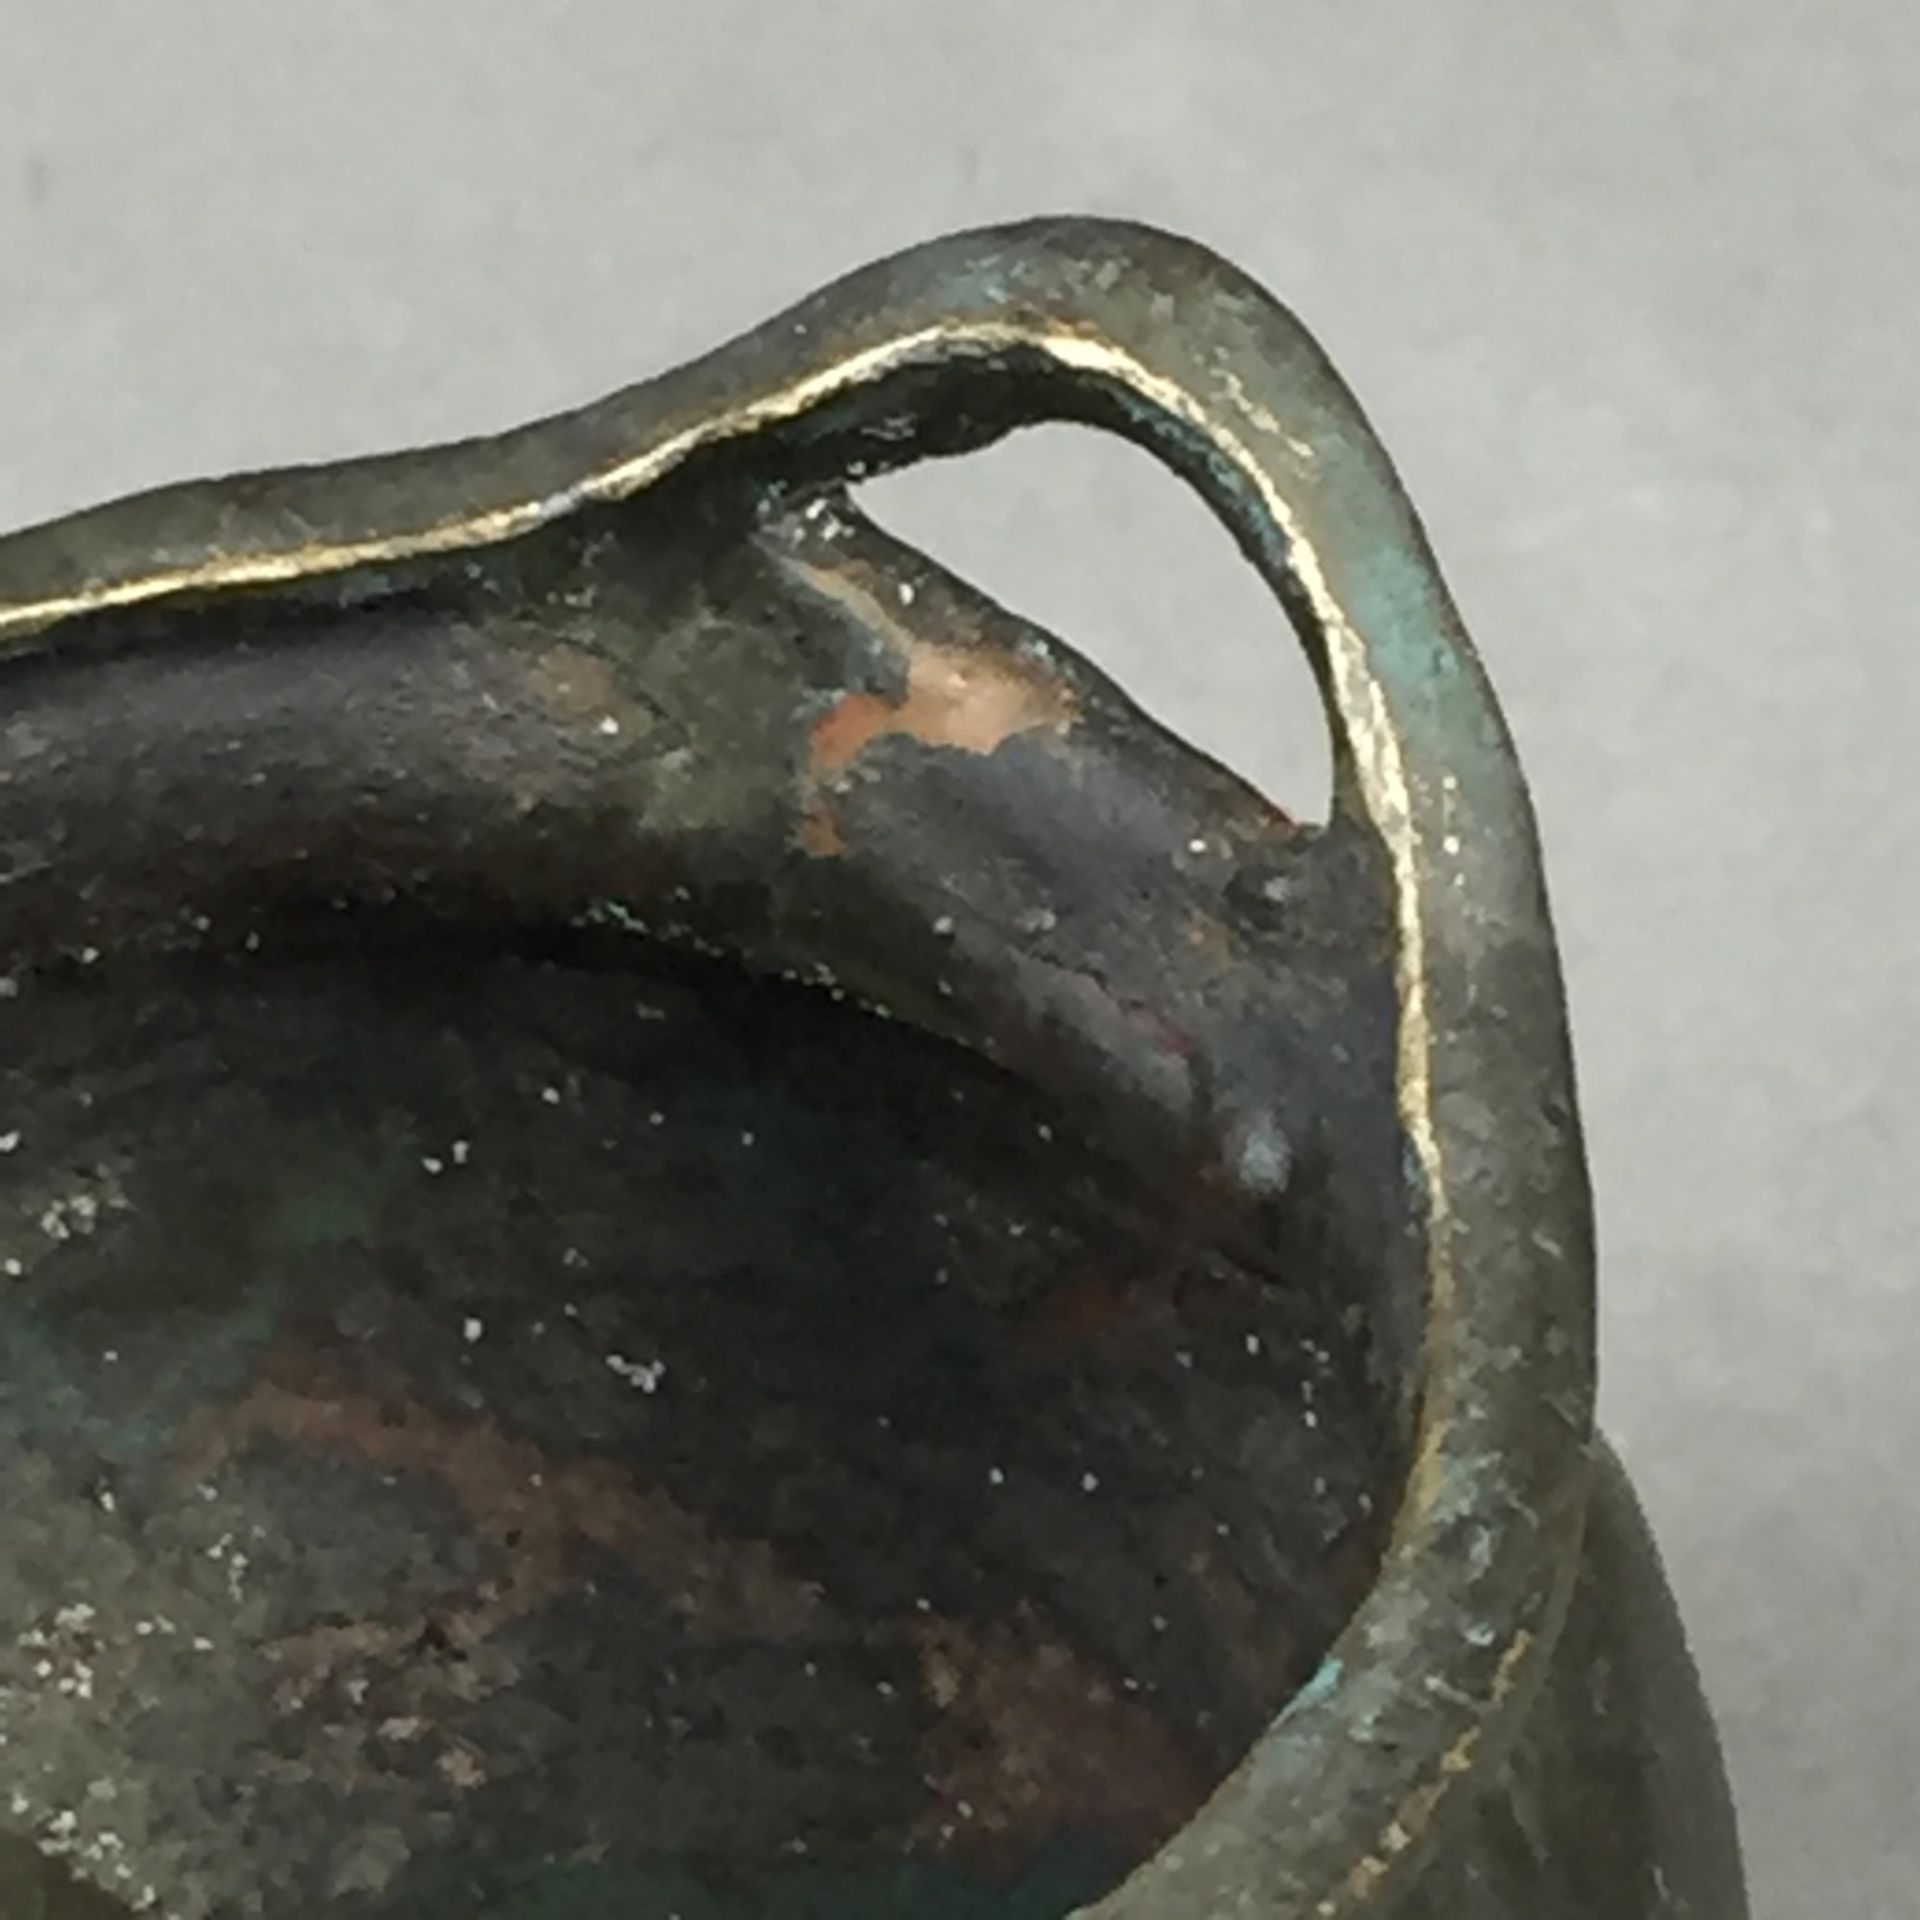 Miniatur-Weihrauchbrenner - China, Bronze, gebauchte Wandung auf drei Füßen, Handhaben als Schlaufen - Bild 5 aus 6